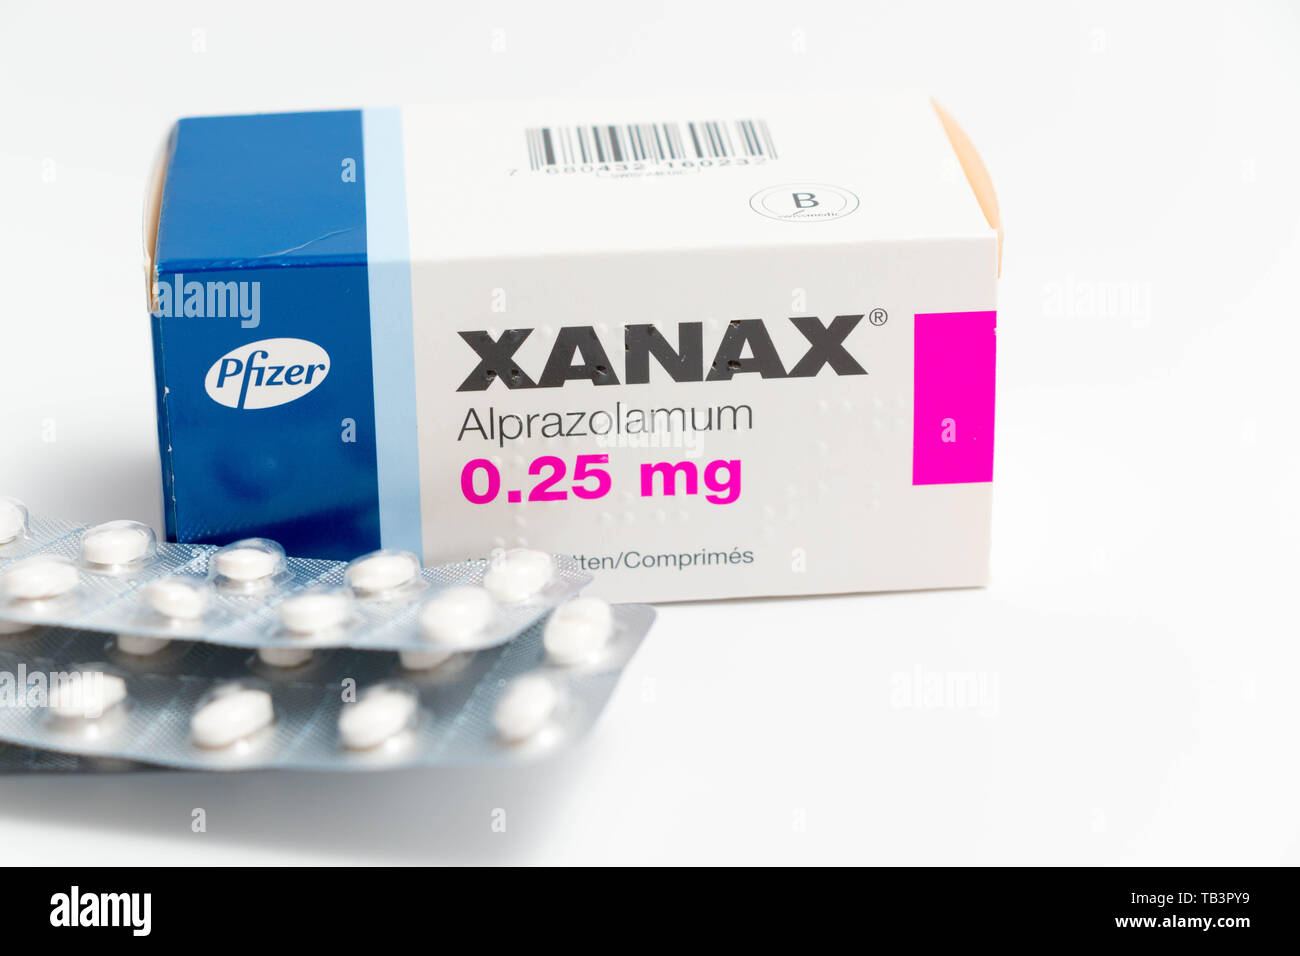 Xanax pilule du bonheur — Livraison express